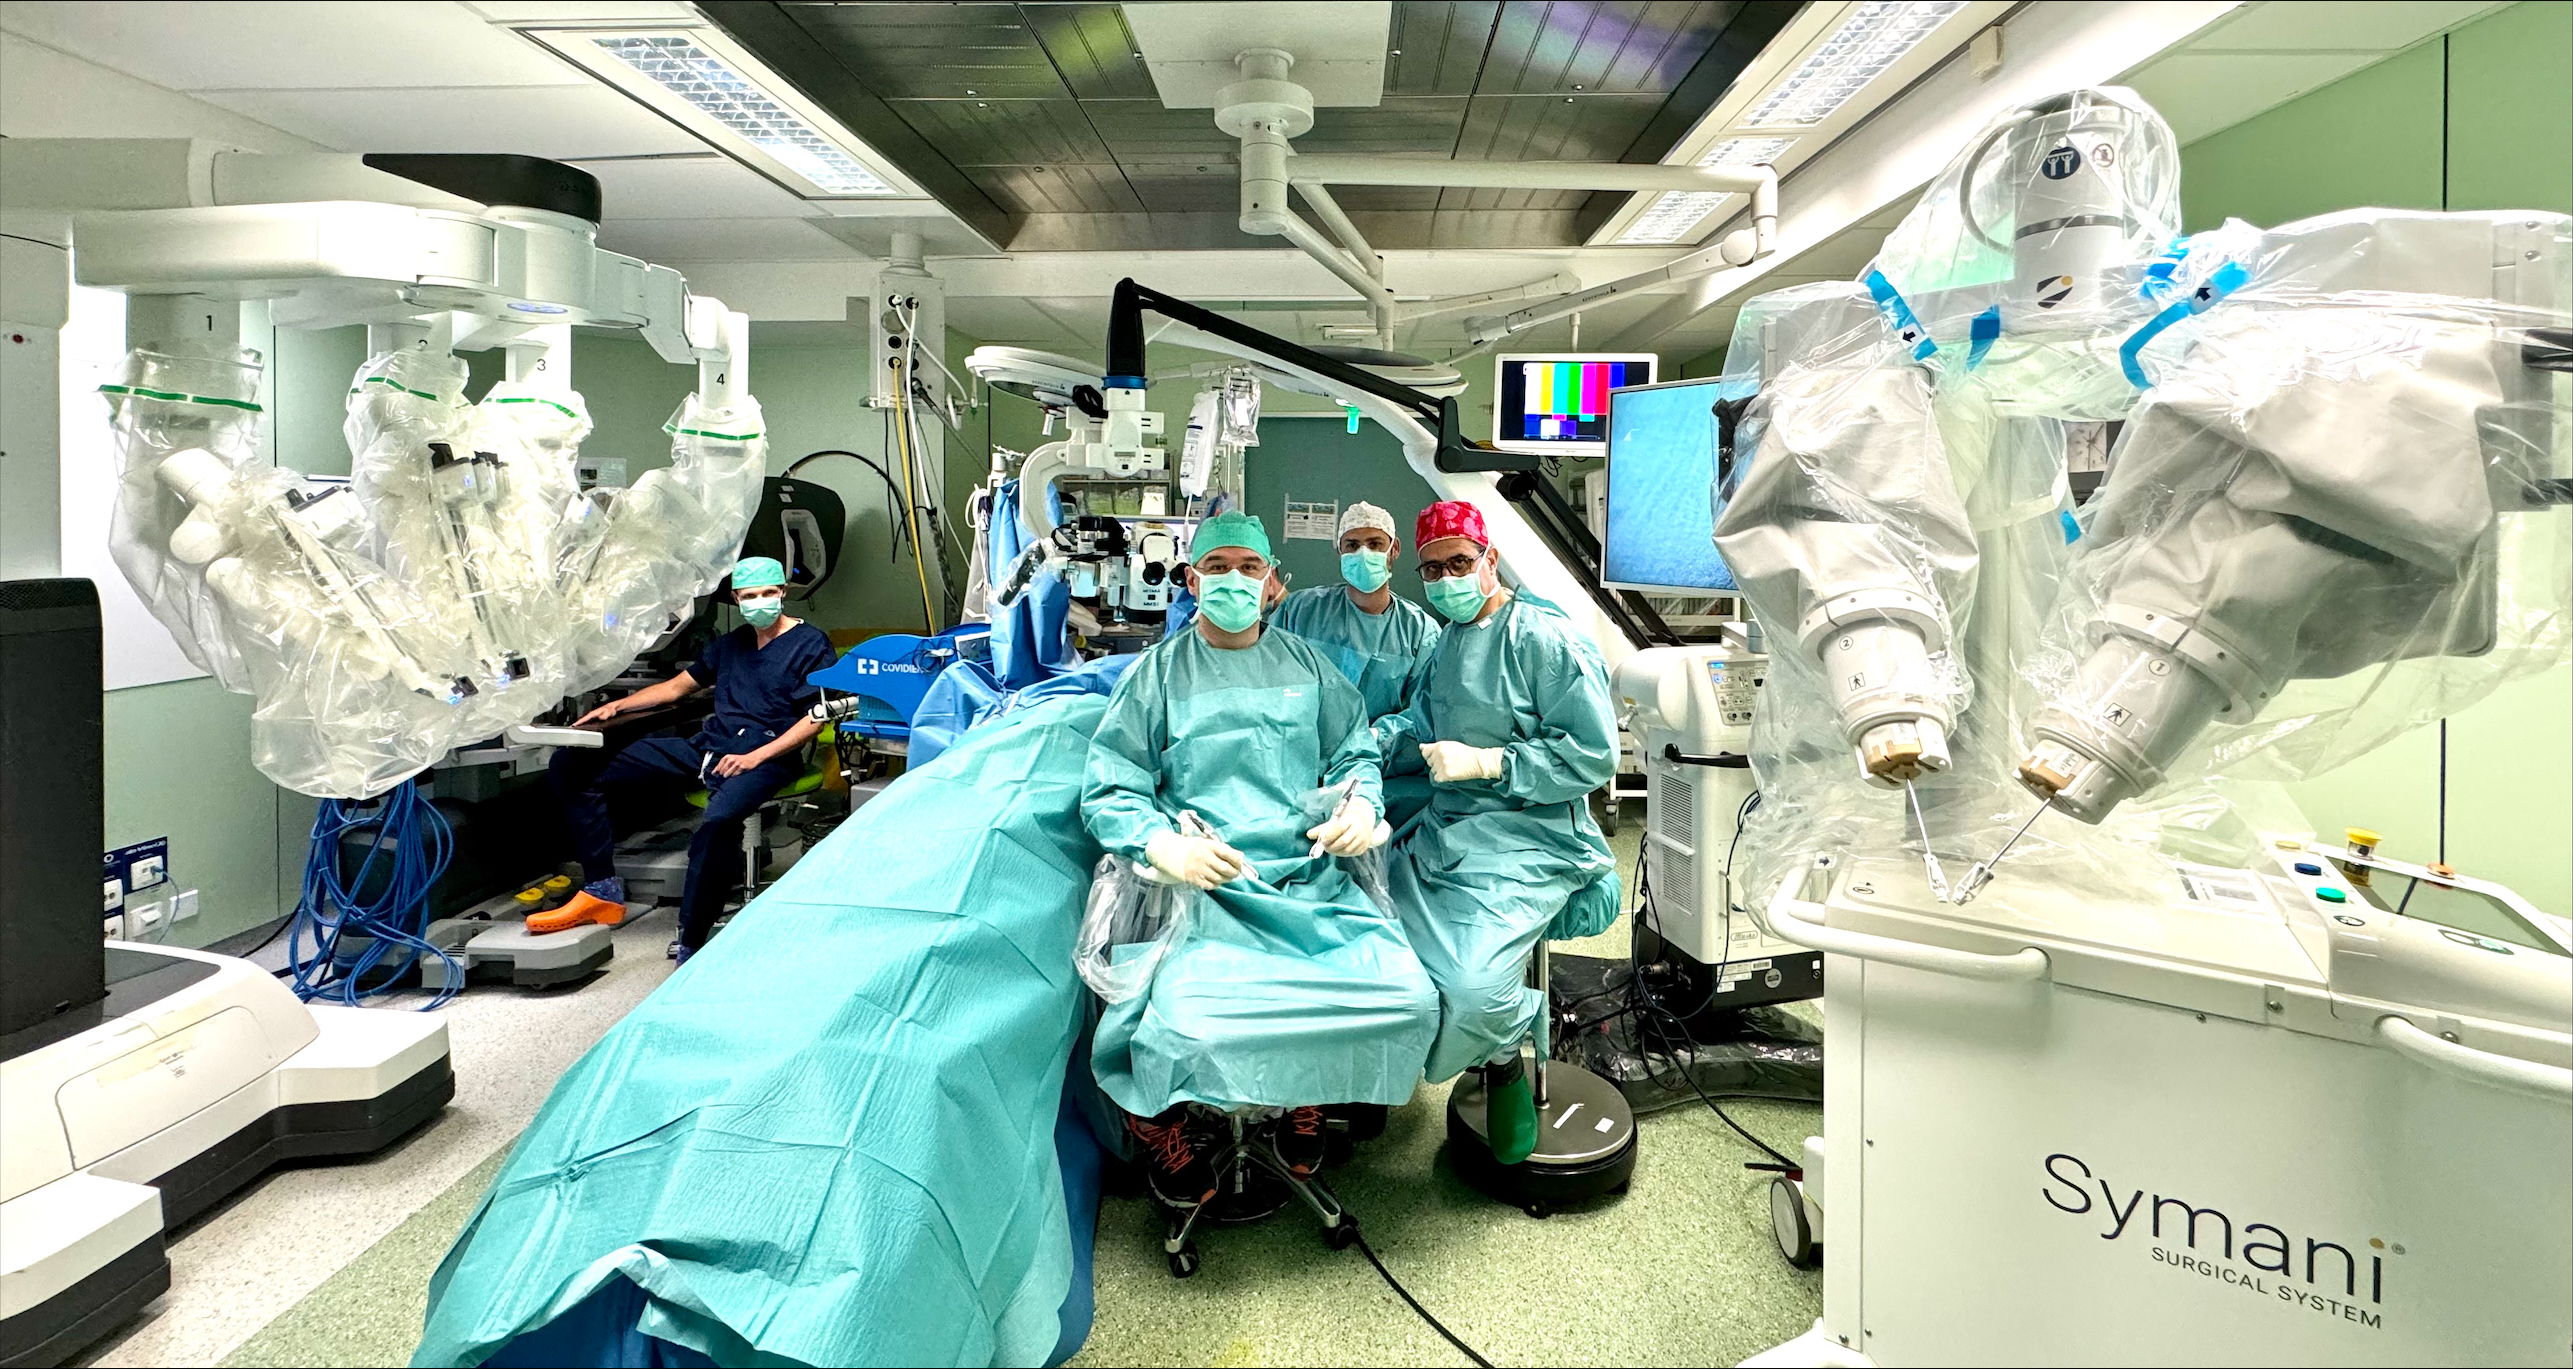 Het team dat de operatie succesvol uitvoerde (vlnr): dr. Schoneveld, prof. dr. Nistor, dr. Giunta, prof. dr. Hamdi.